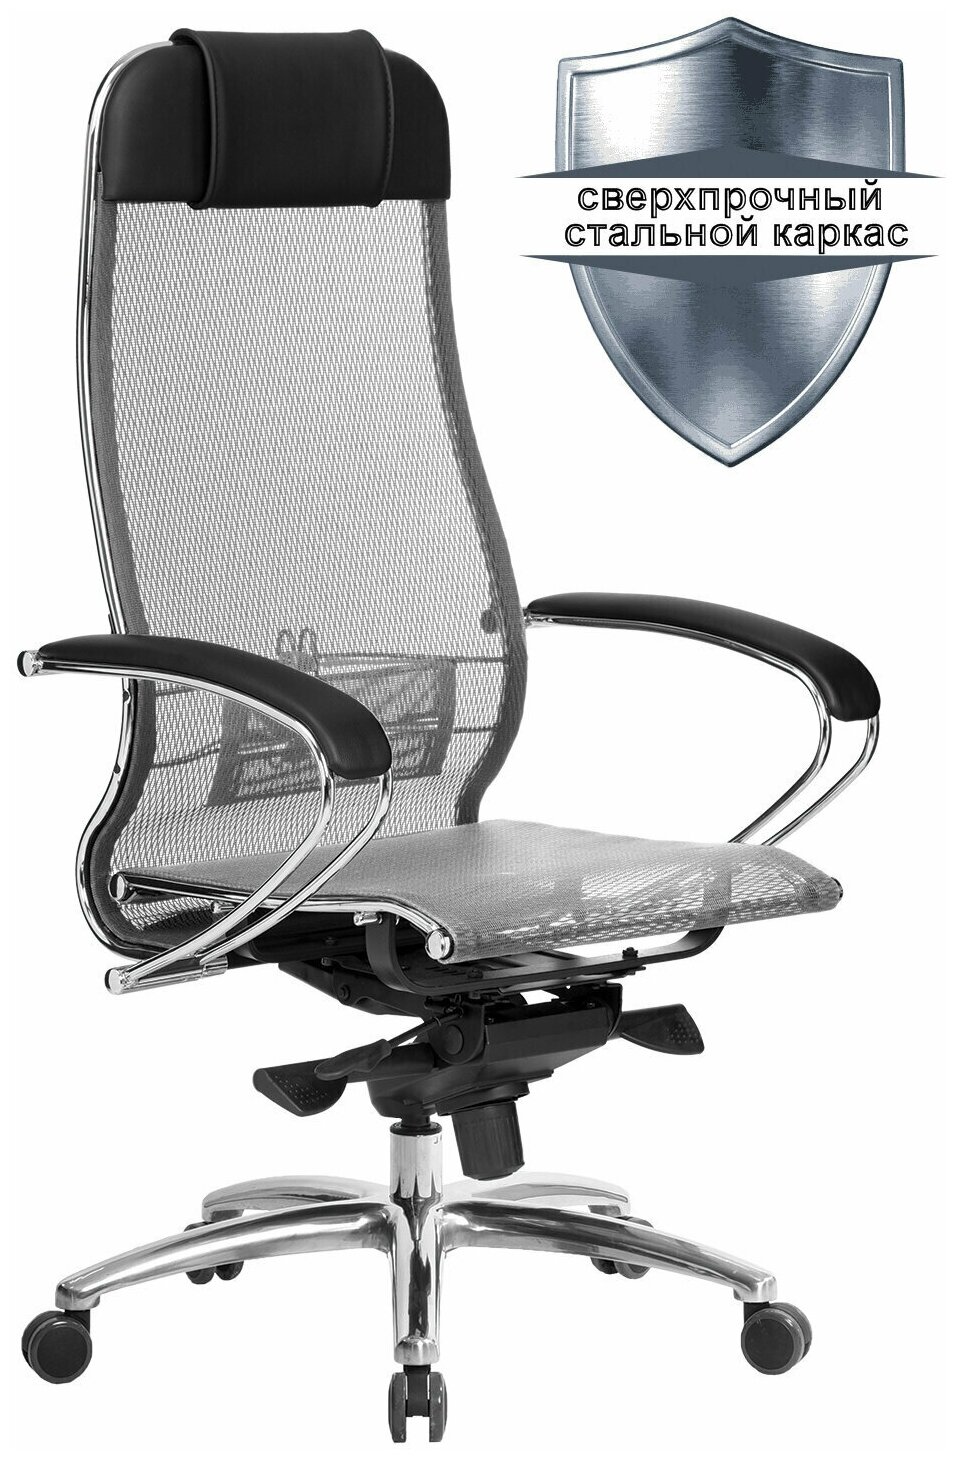 Кресло офисное метта «SAMURAI» S-1.04, сверхпрочная ткань-сетка, серое /Квант продажи 1 ед./